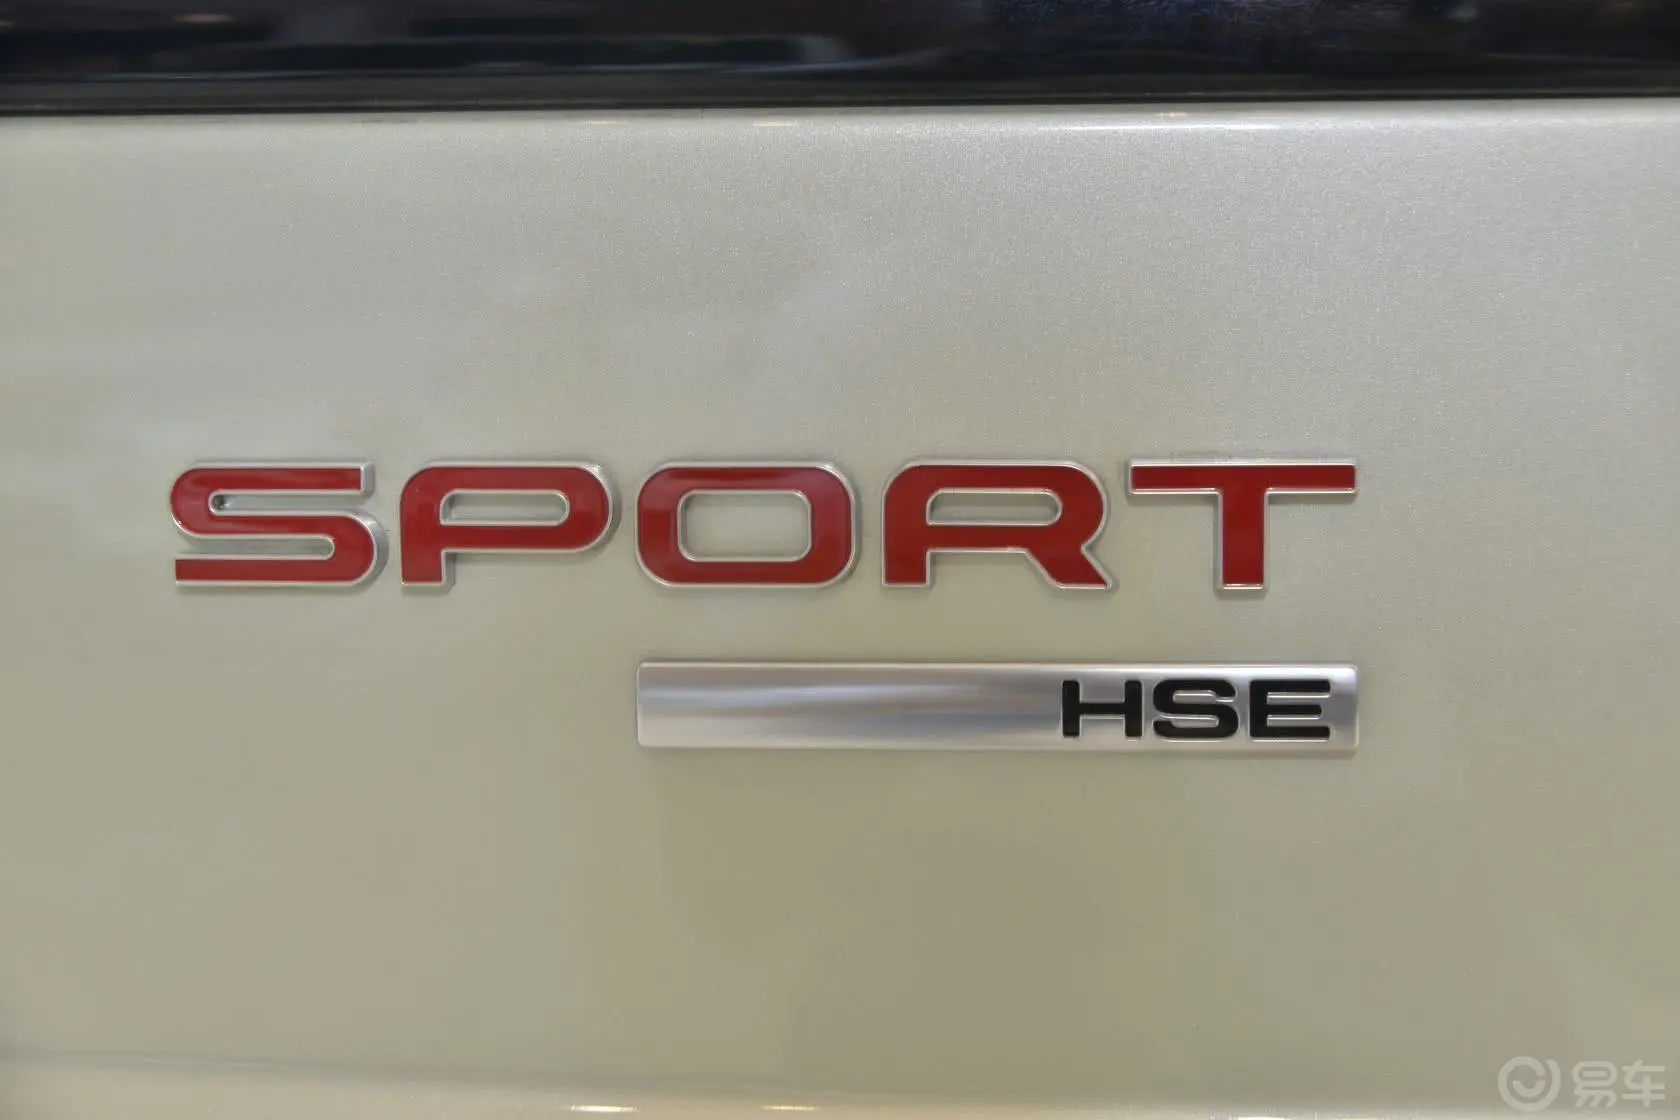 揽胜运动版3.0 V6 SC 汽油版 HSE Dynamic尾标